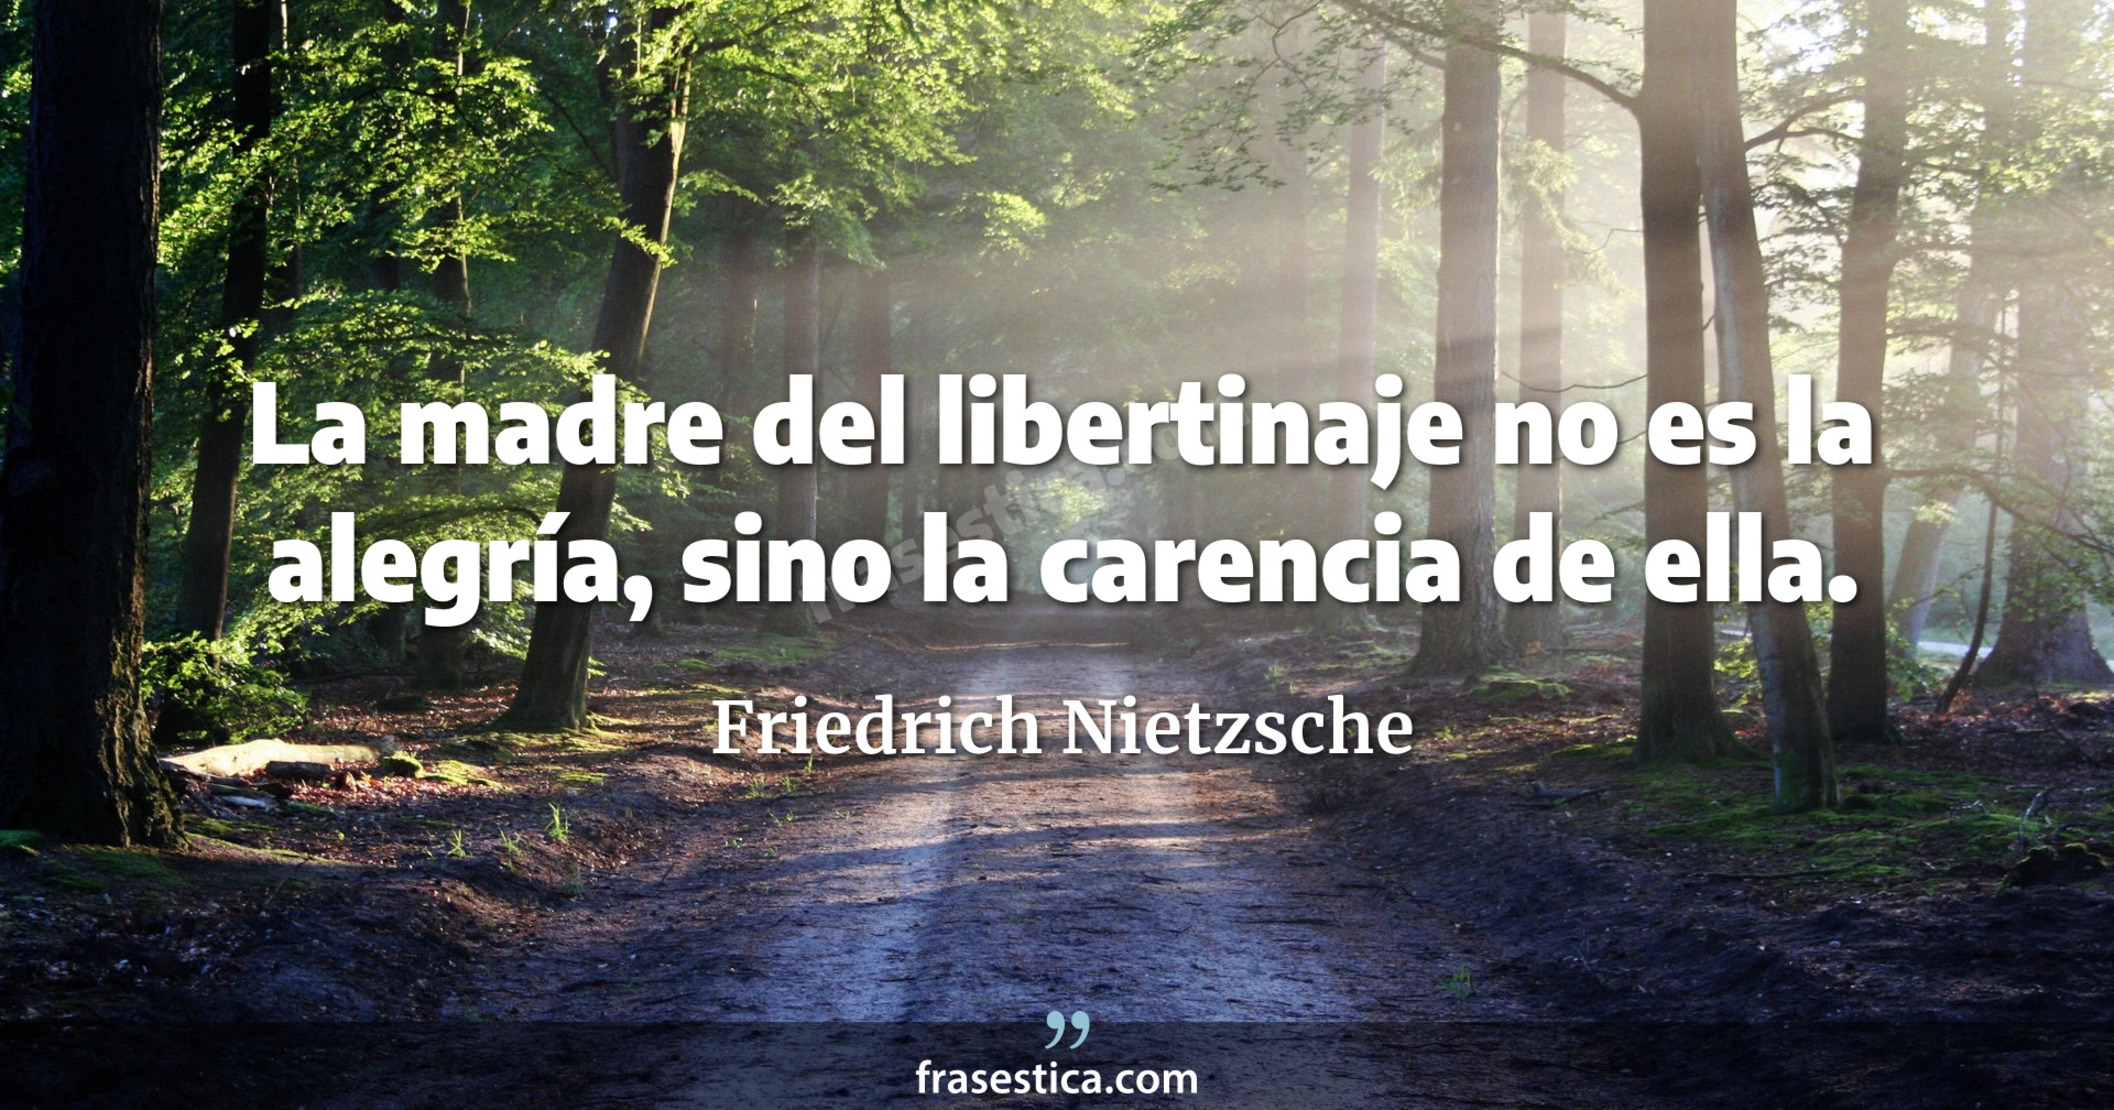 La madre del libertinaje no es la alegría, sino la carencia de ella. - Friedrich Nietzsche